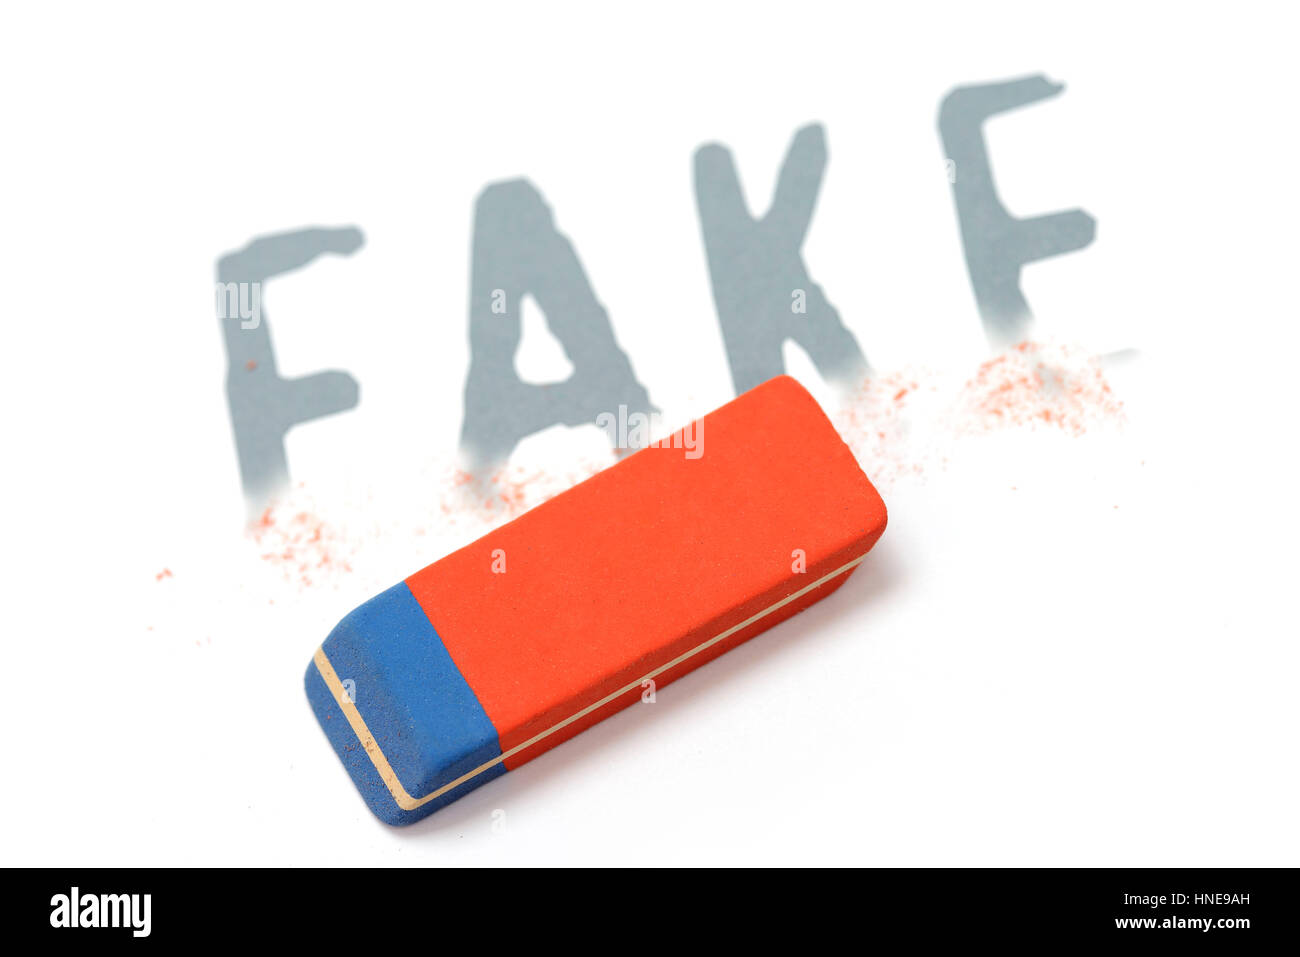 Das Wort Fake mit Kautschuk, Löschen von Fake Nachrichten in sozialen Netzwerken, Das Johanniskraut Fake Mit Radiergummi, Löschung von Fake Nachrichten in Sozialen Netzwerken Stockfoto